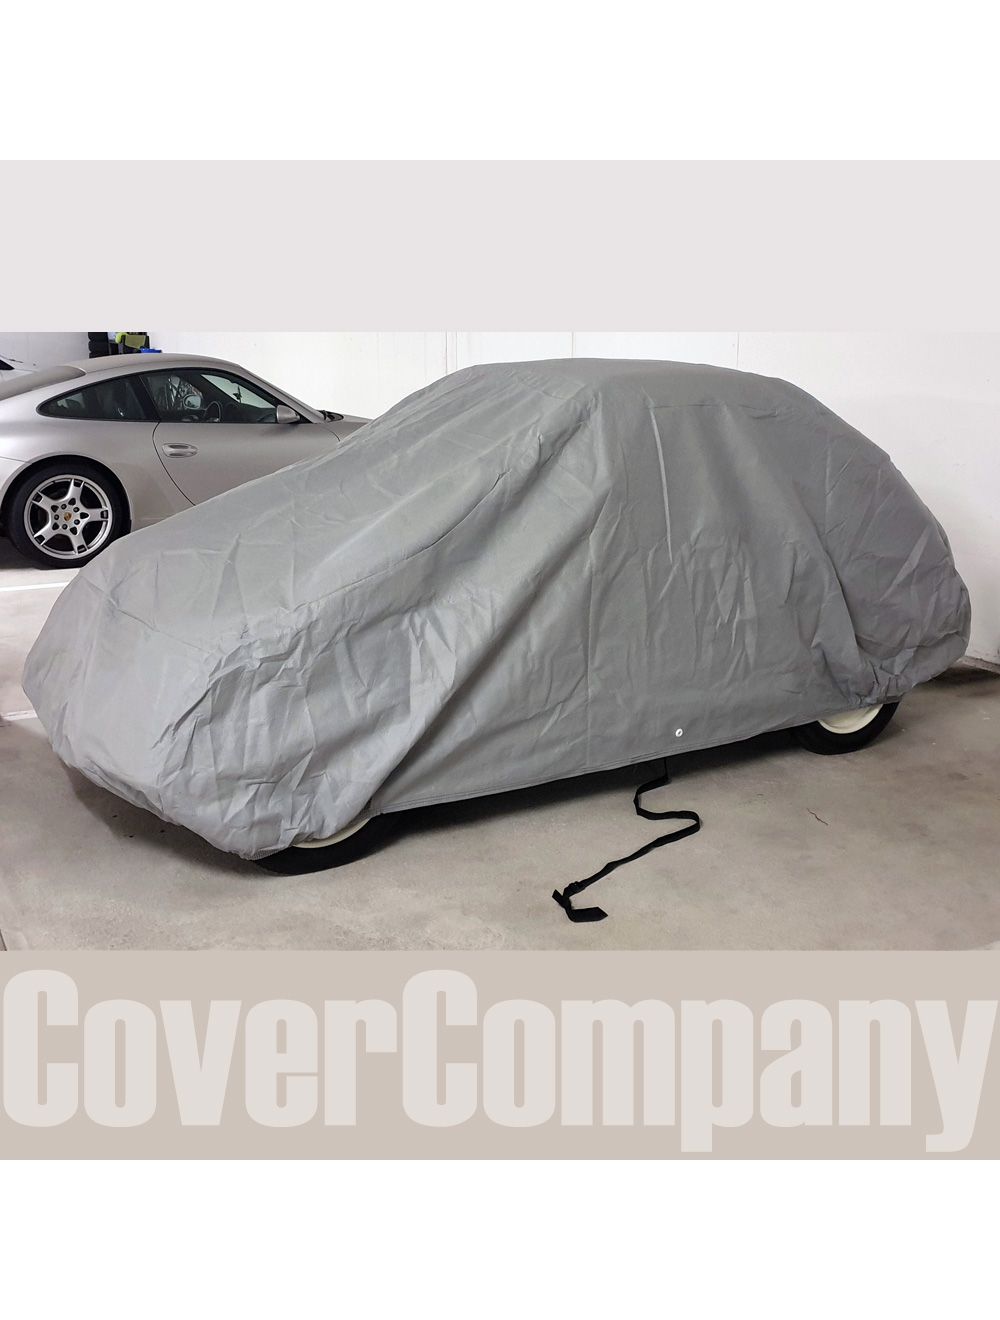 Standard Fit Fiat Rainproof Car Cover - Outdoor Bronze Range